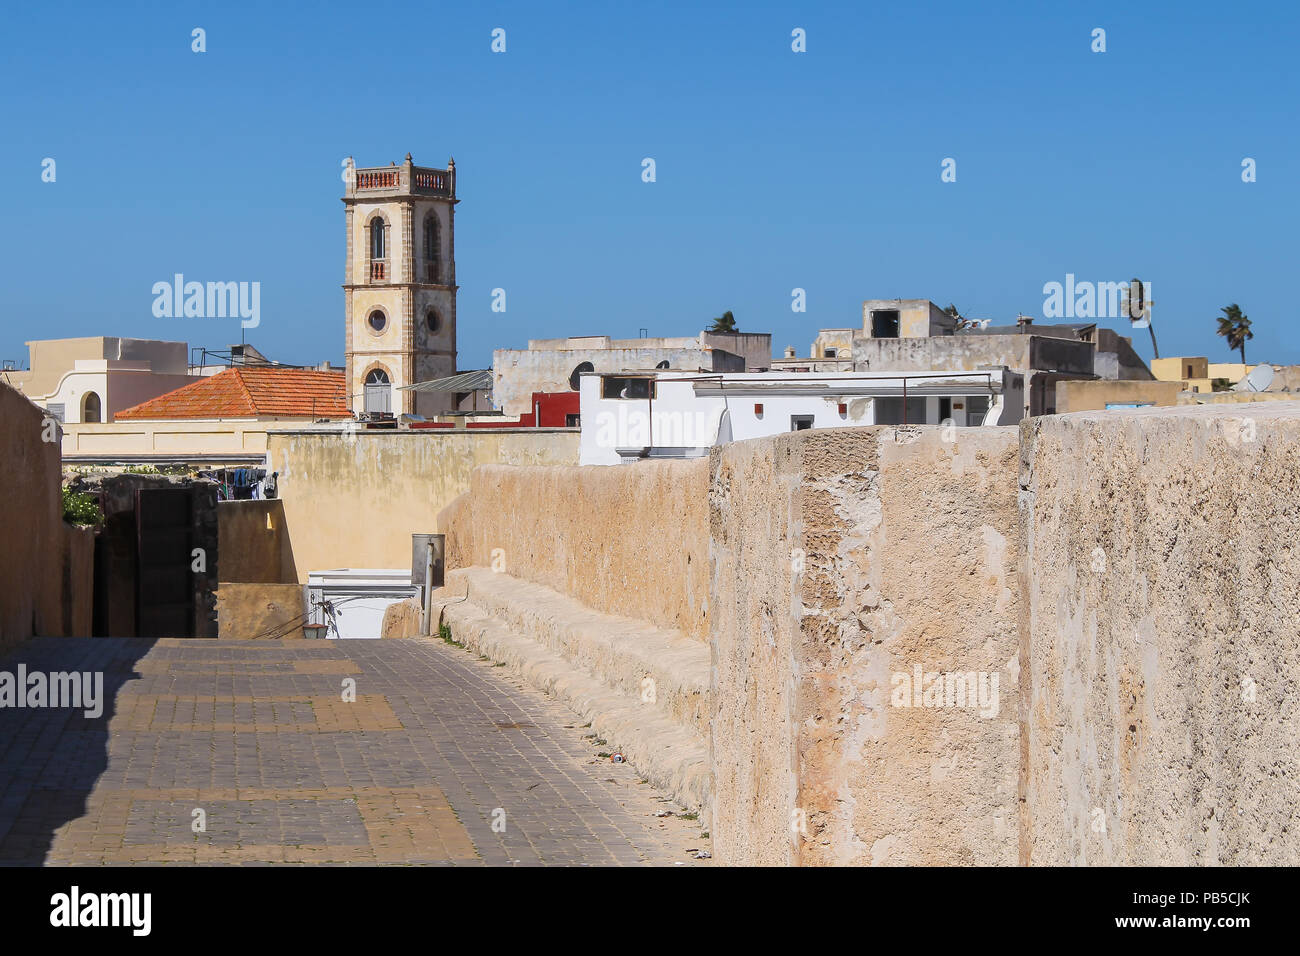 Vista sulla città del portoghese ex fortezza. Tetti di case e di una torre. Azzurro cielo. El Jadida, Marocco. Foto Stock